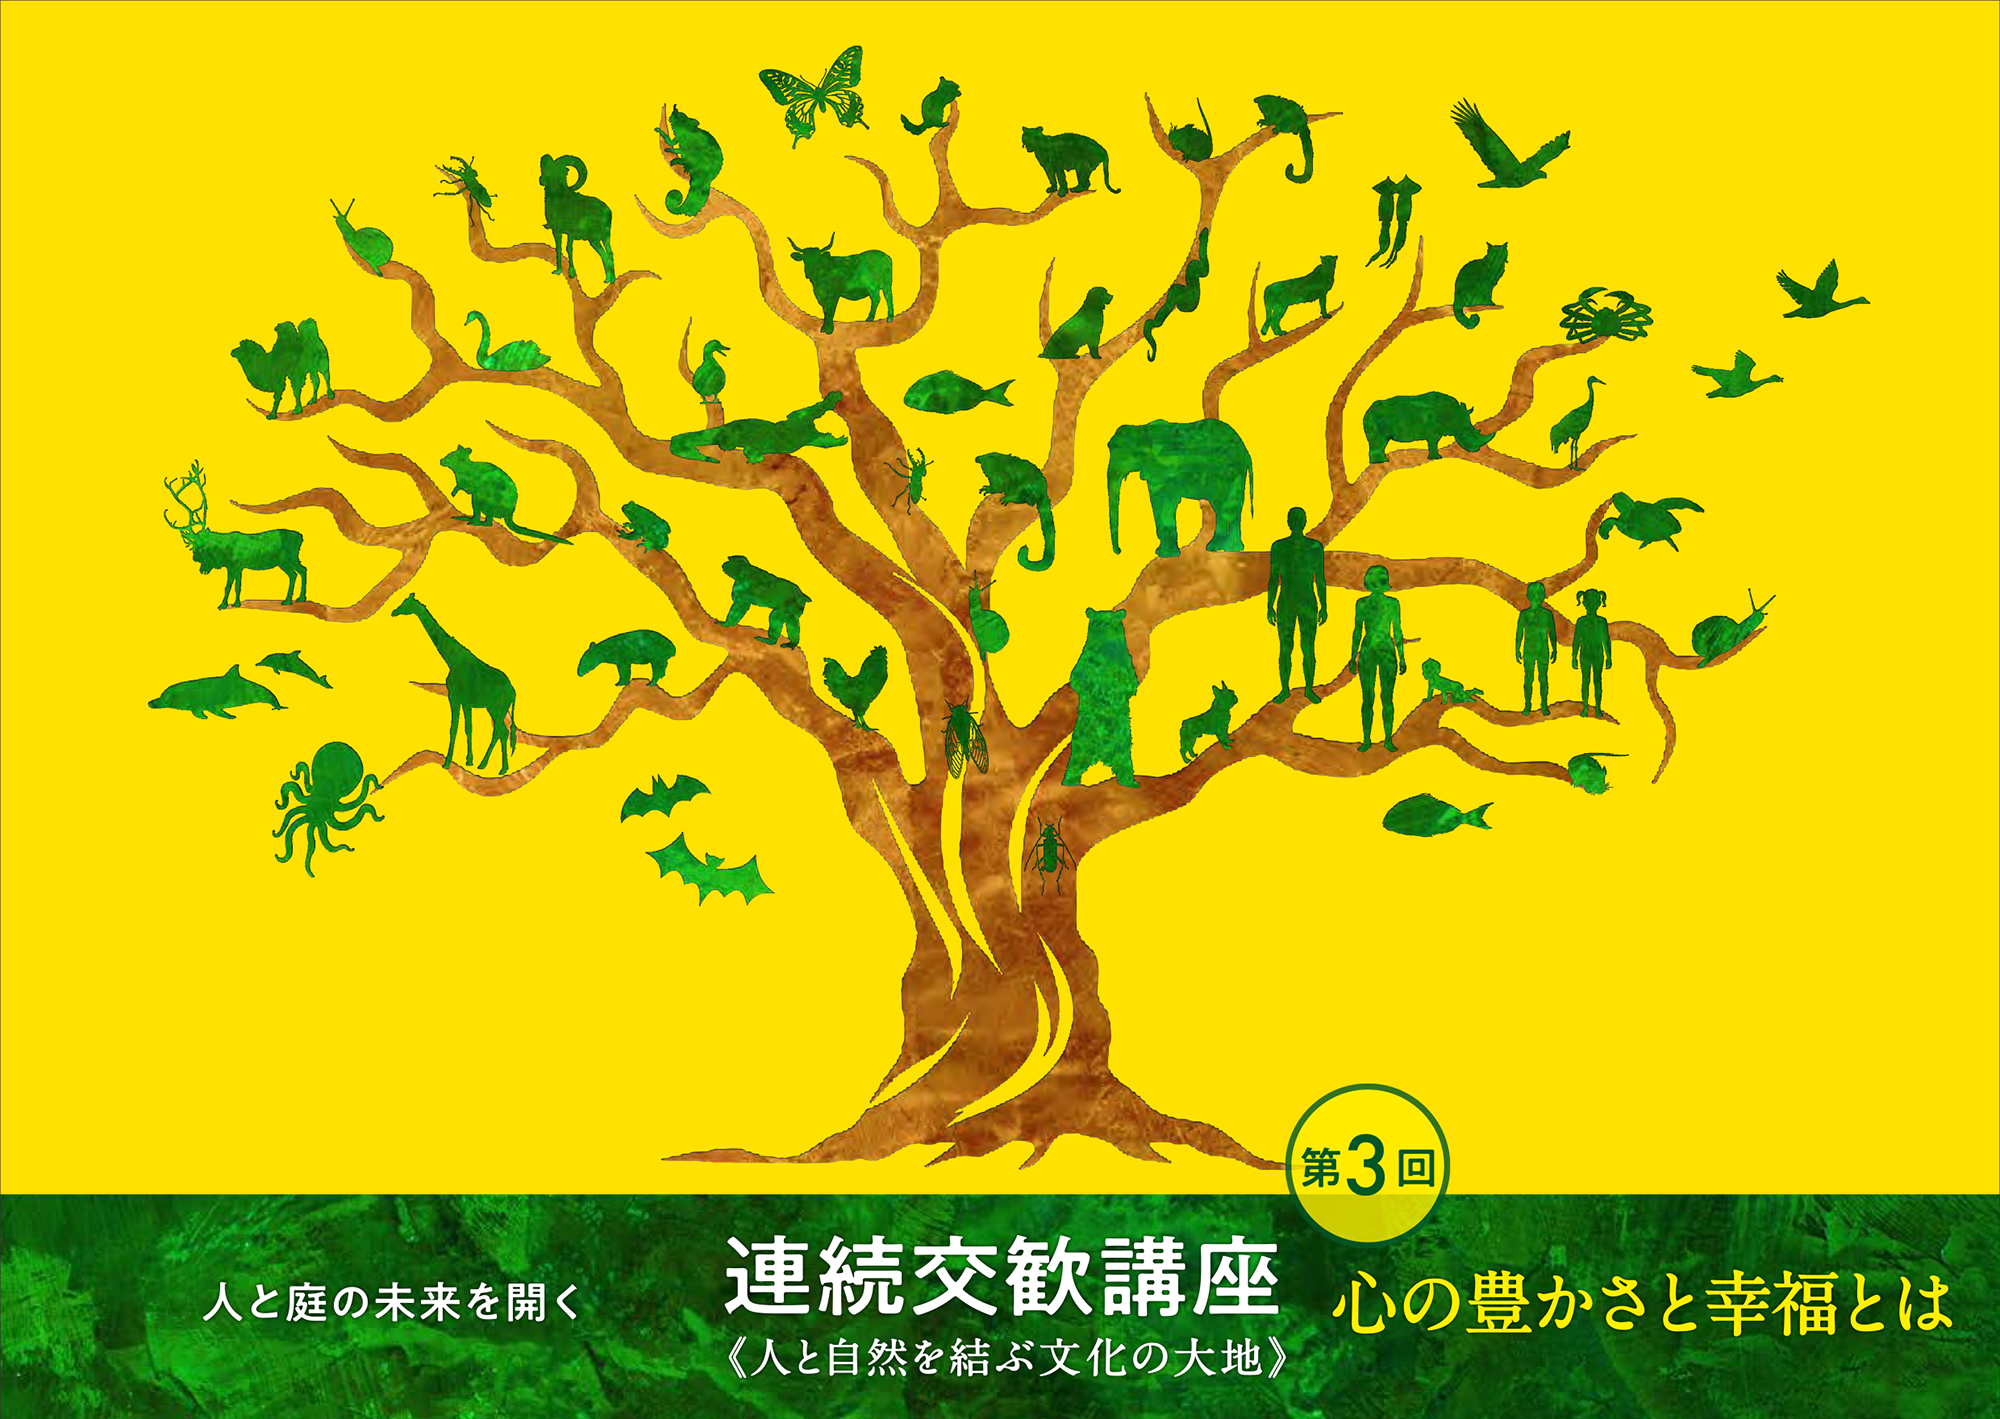 日本庭園協会 第3回連続交歓講座『心の豊かさと幸福とは』